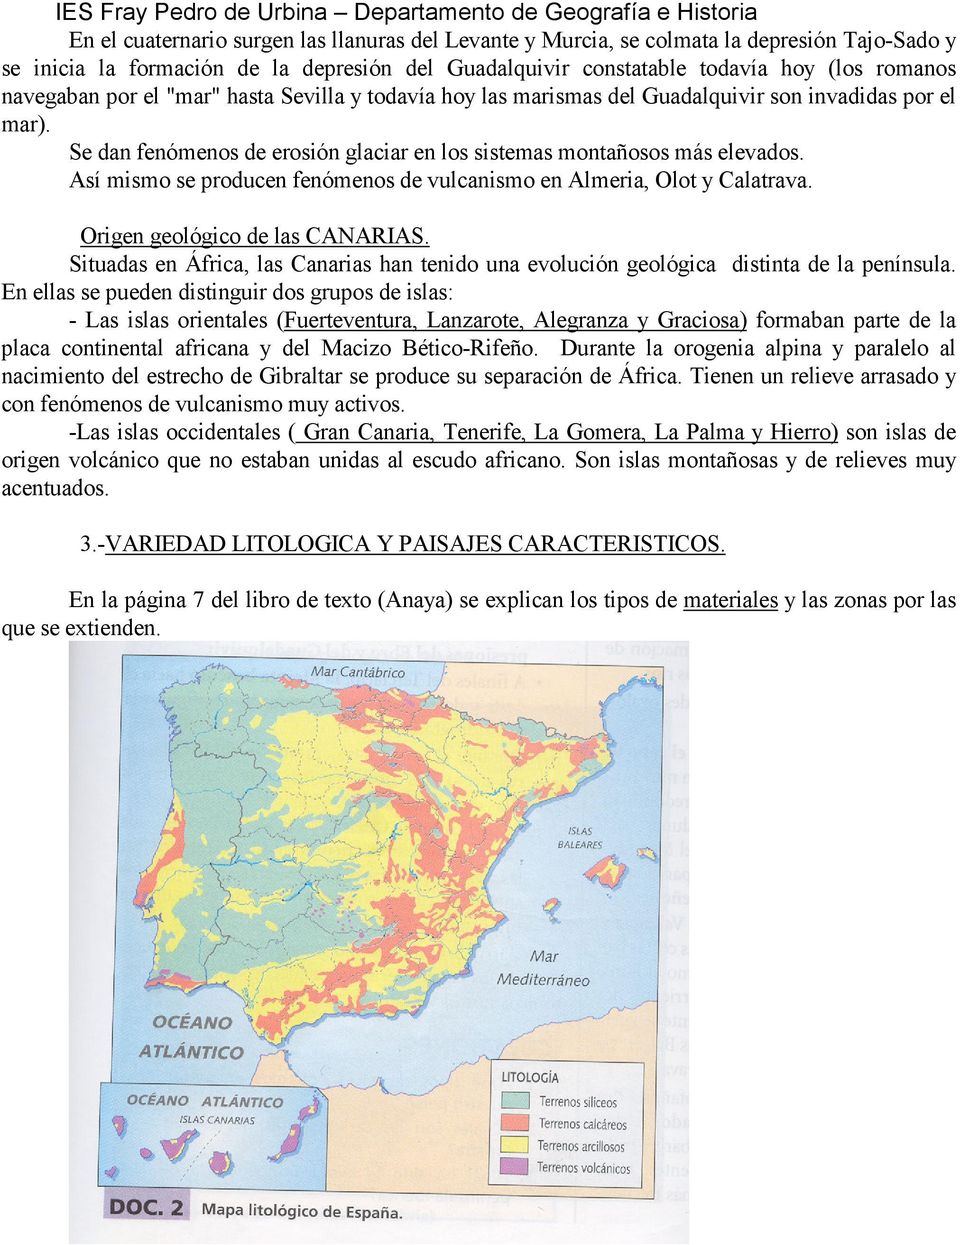 Así mismo se producen fenómenos de vulcanismo en Almeria, Olot y Calatrava. Origen geológico de las CANARIAS.